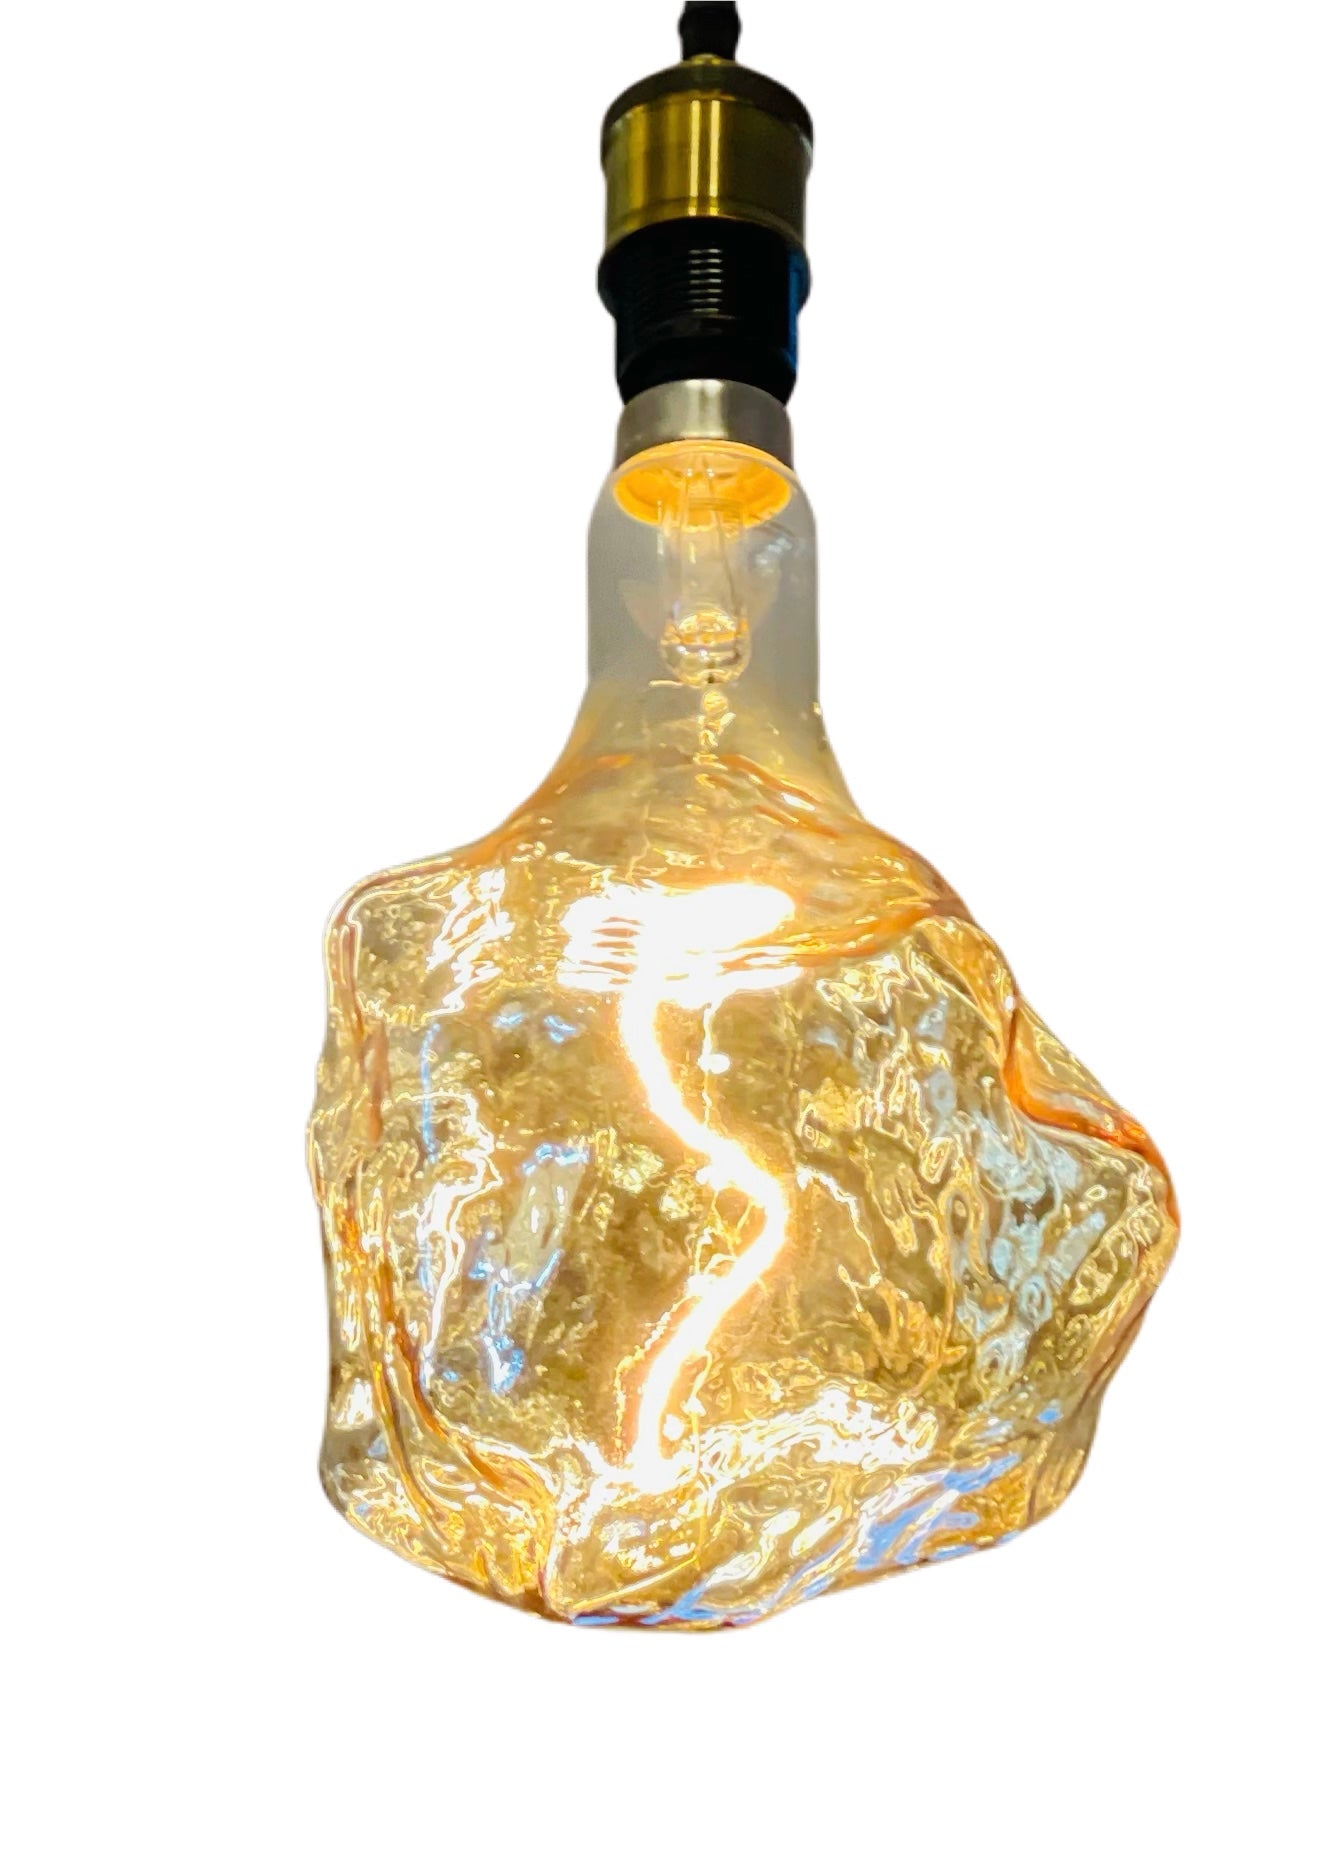 Glacier Lightbulb with LED Filament - Restoration Oak